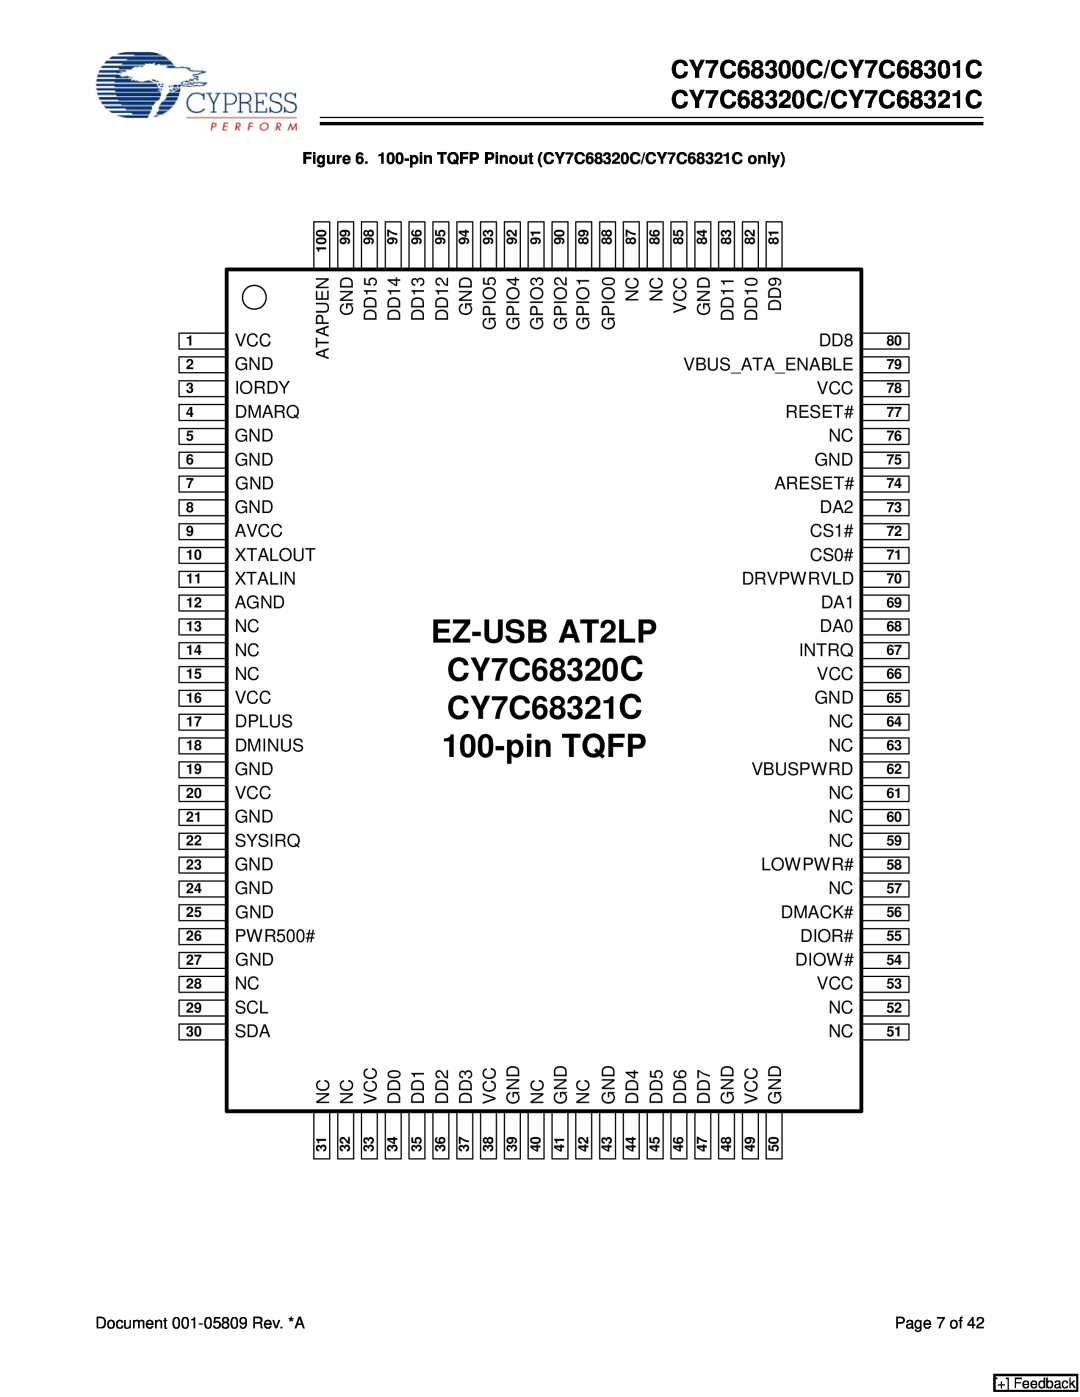 Cypress specifications pin TQFP, EZ-USB AT2LP, CY7C68320A, CY7C68321A, CY7C68300C/CY7C68301C CY7C68320C/CY7C68321C 